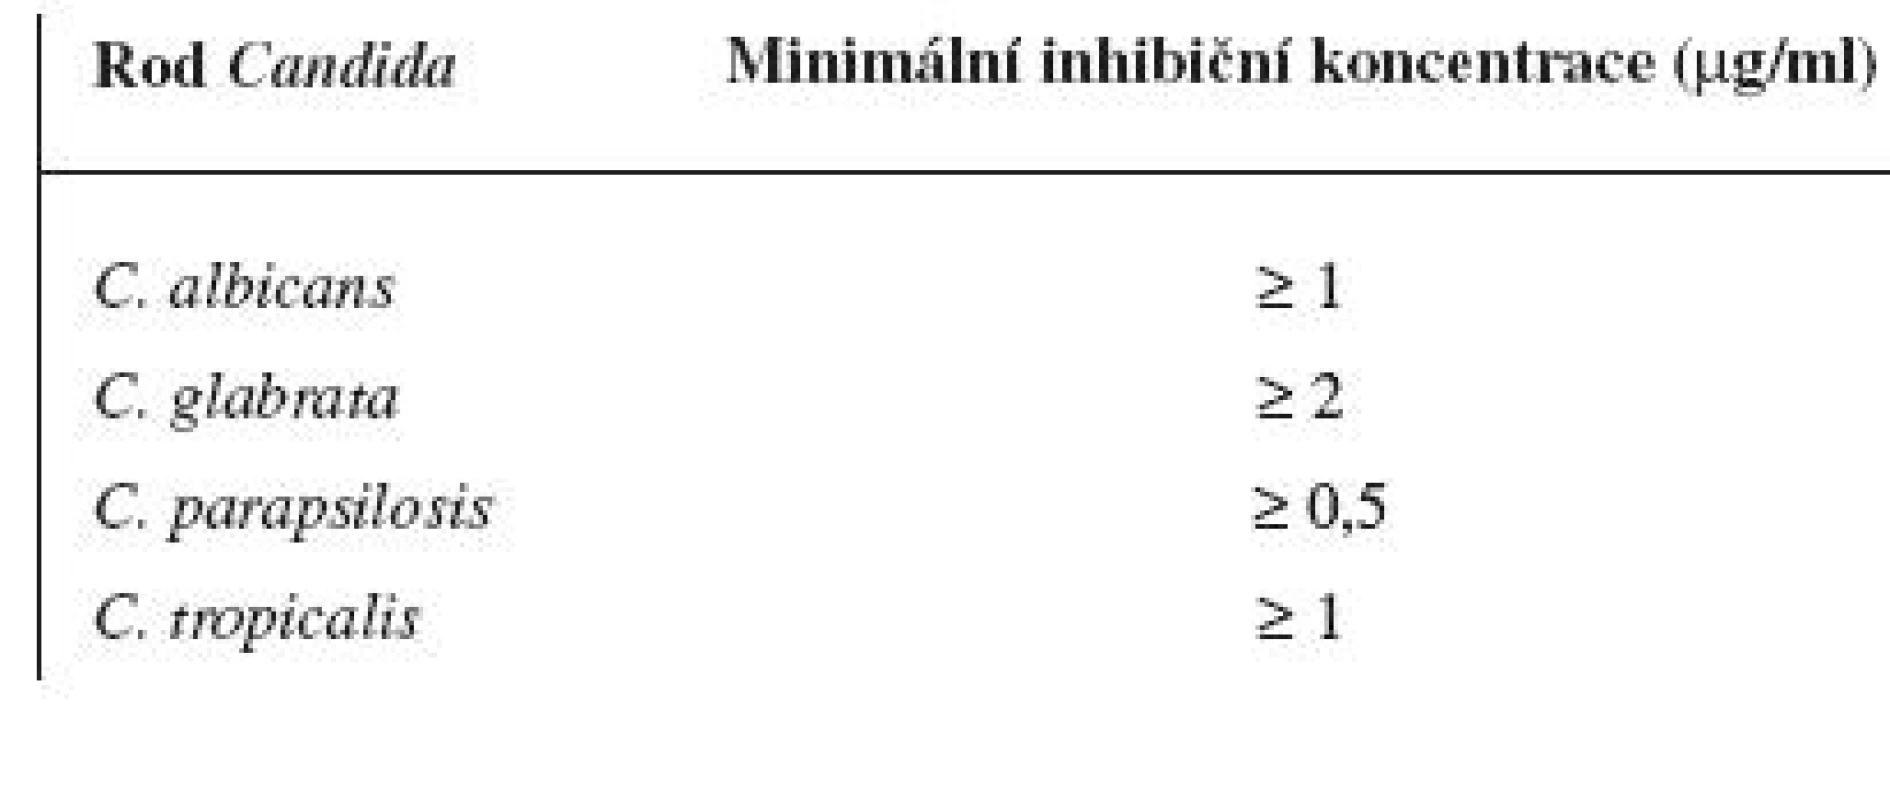 Minimální inhibiční koncentrace ciclopiroxolaminu